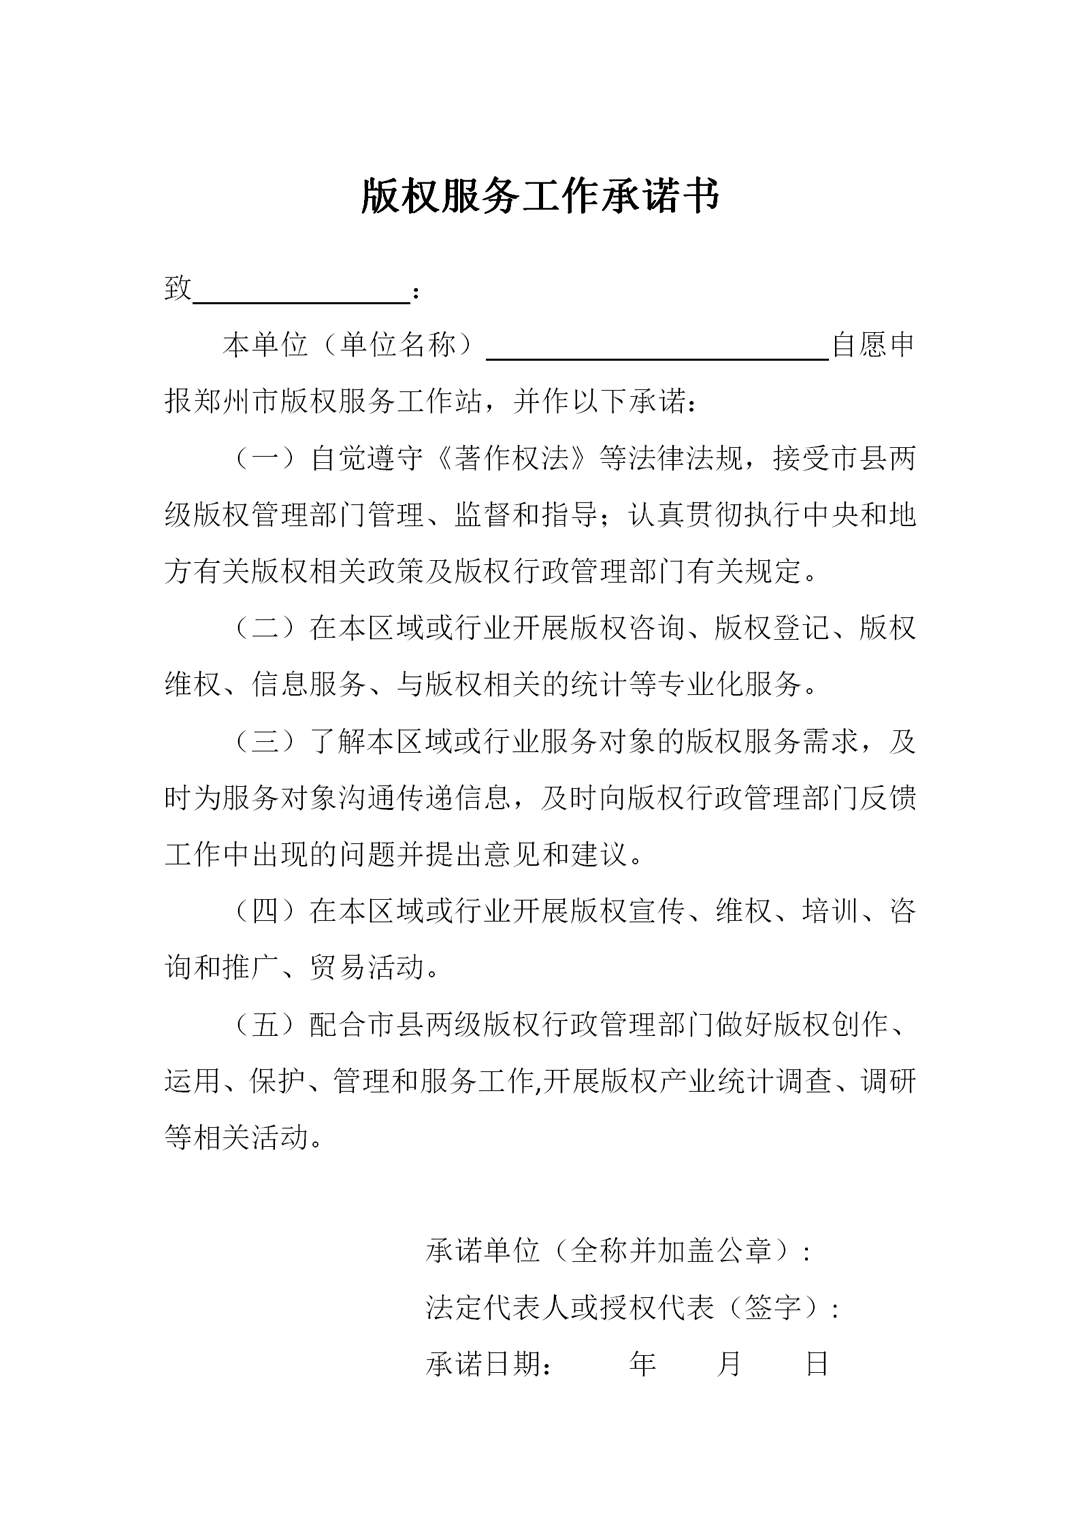 新闻07-《郑州市版权服务工作站管理办法》及申报说明_01.png